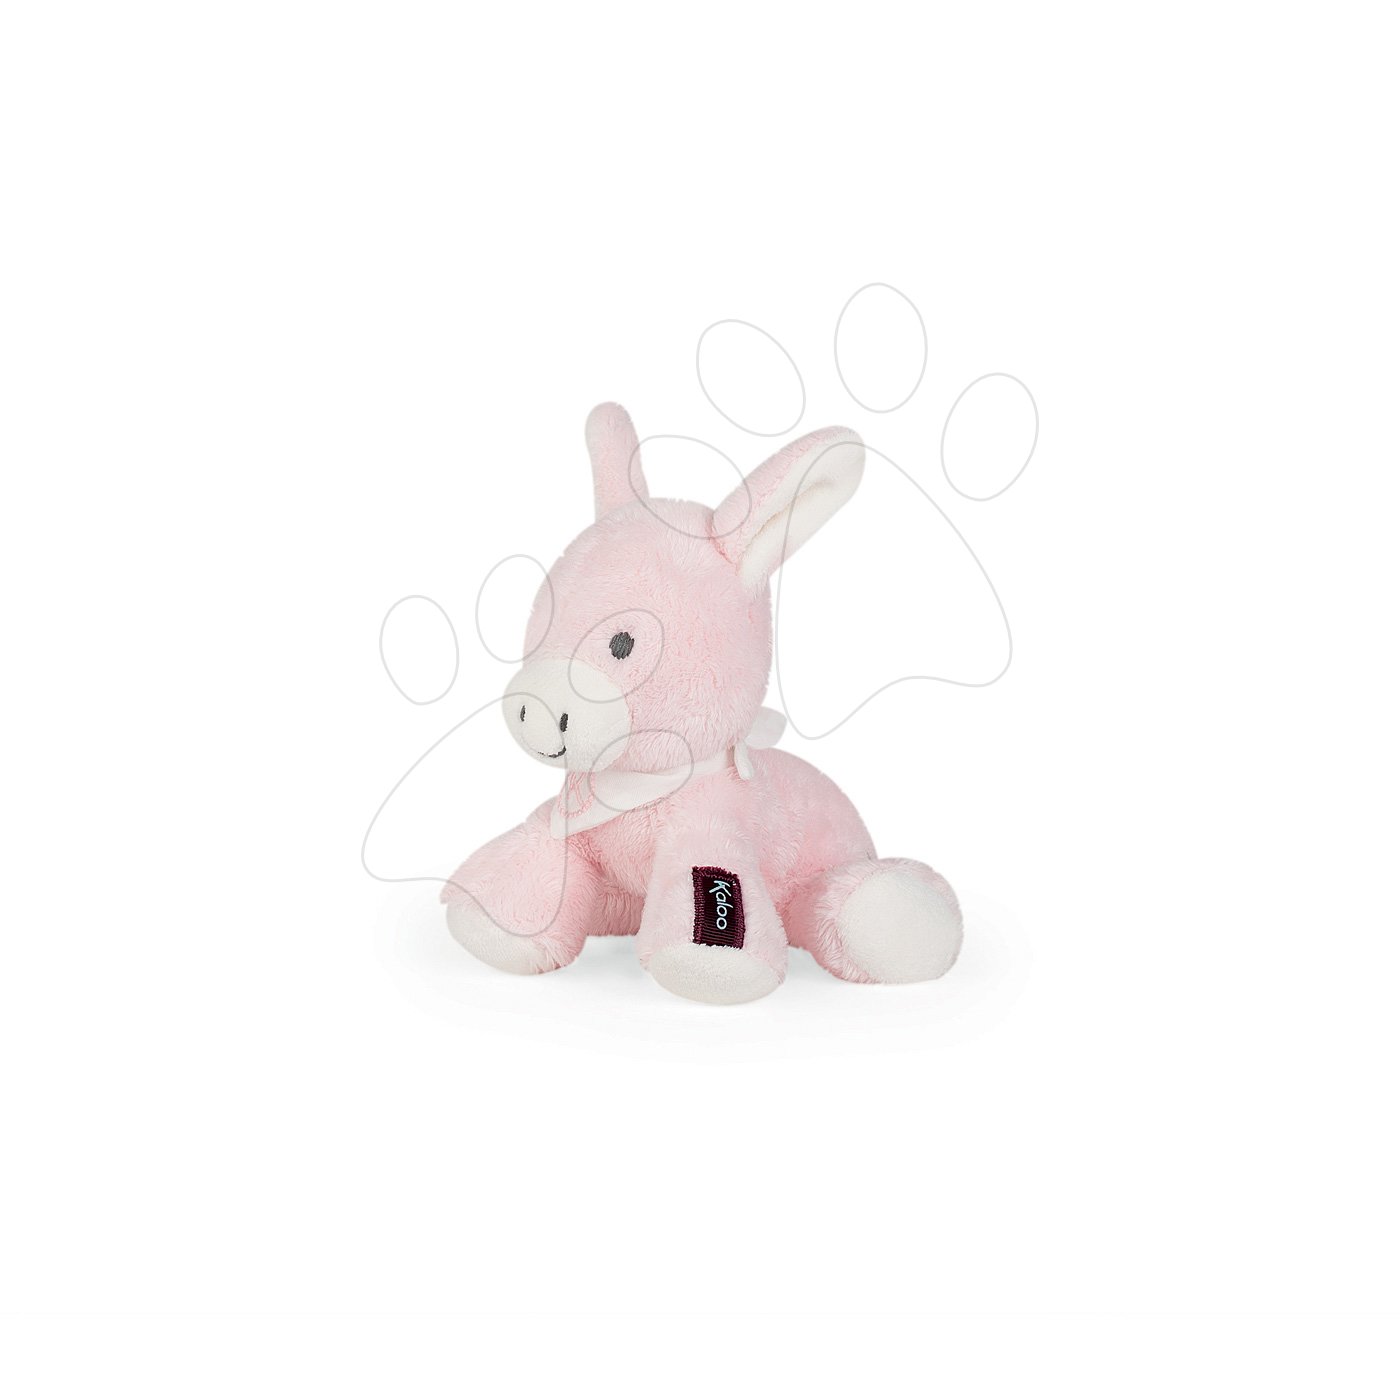 Plyšové a textilní hračky - Plyšový oslík Les Amis Regliss Kaloo v dárkovém balení střední 19 cm růžový od 0 měsíců